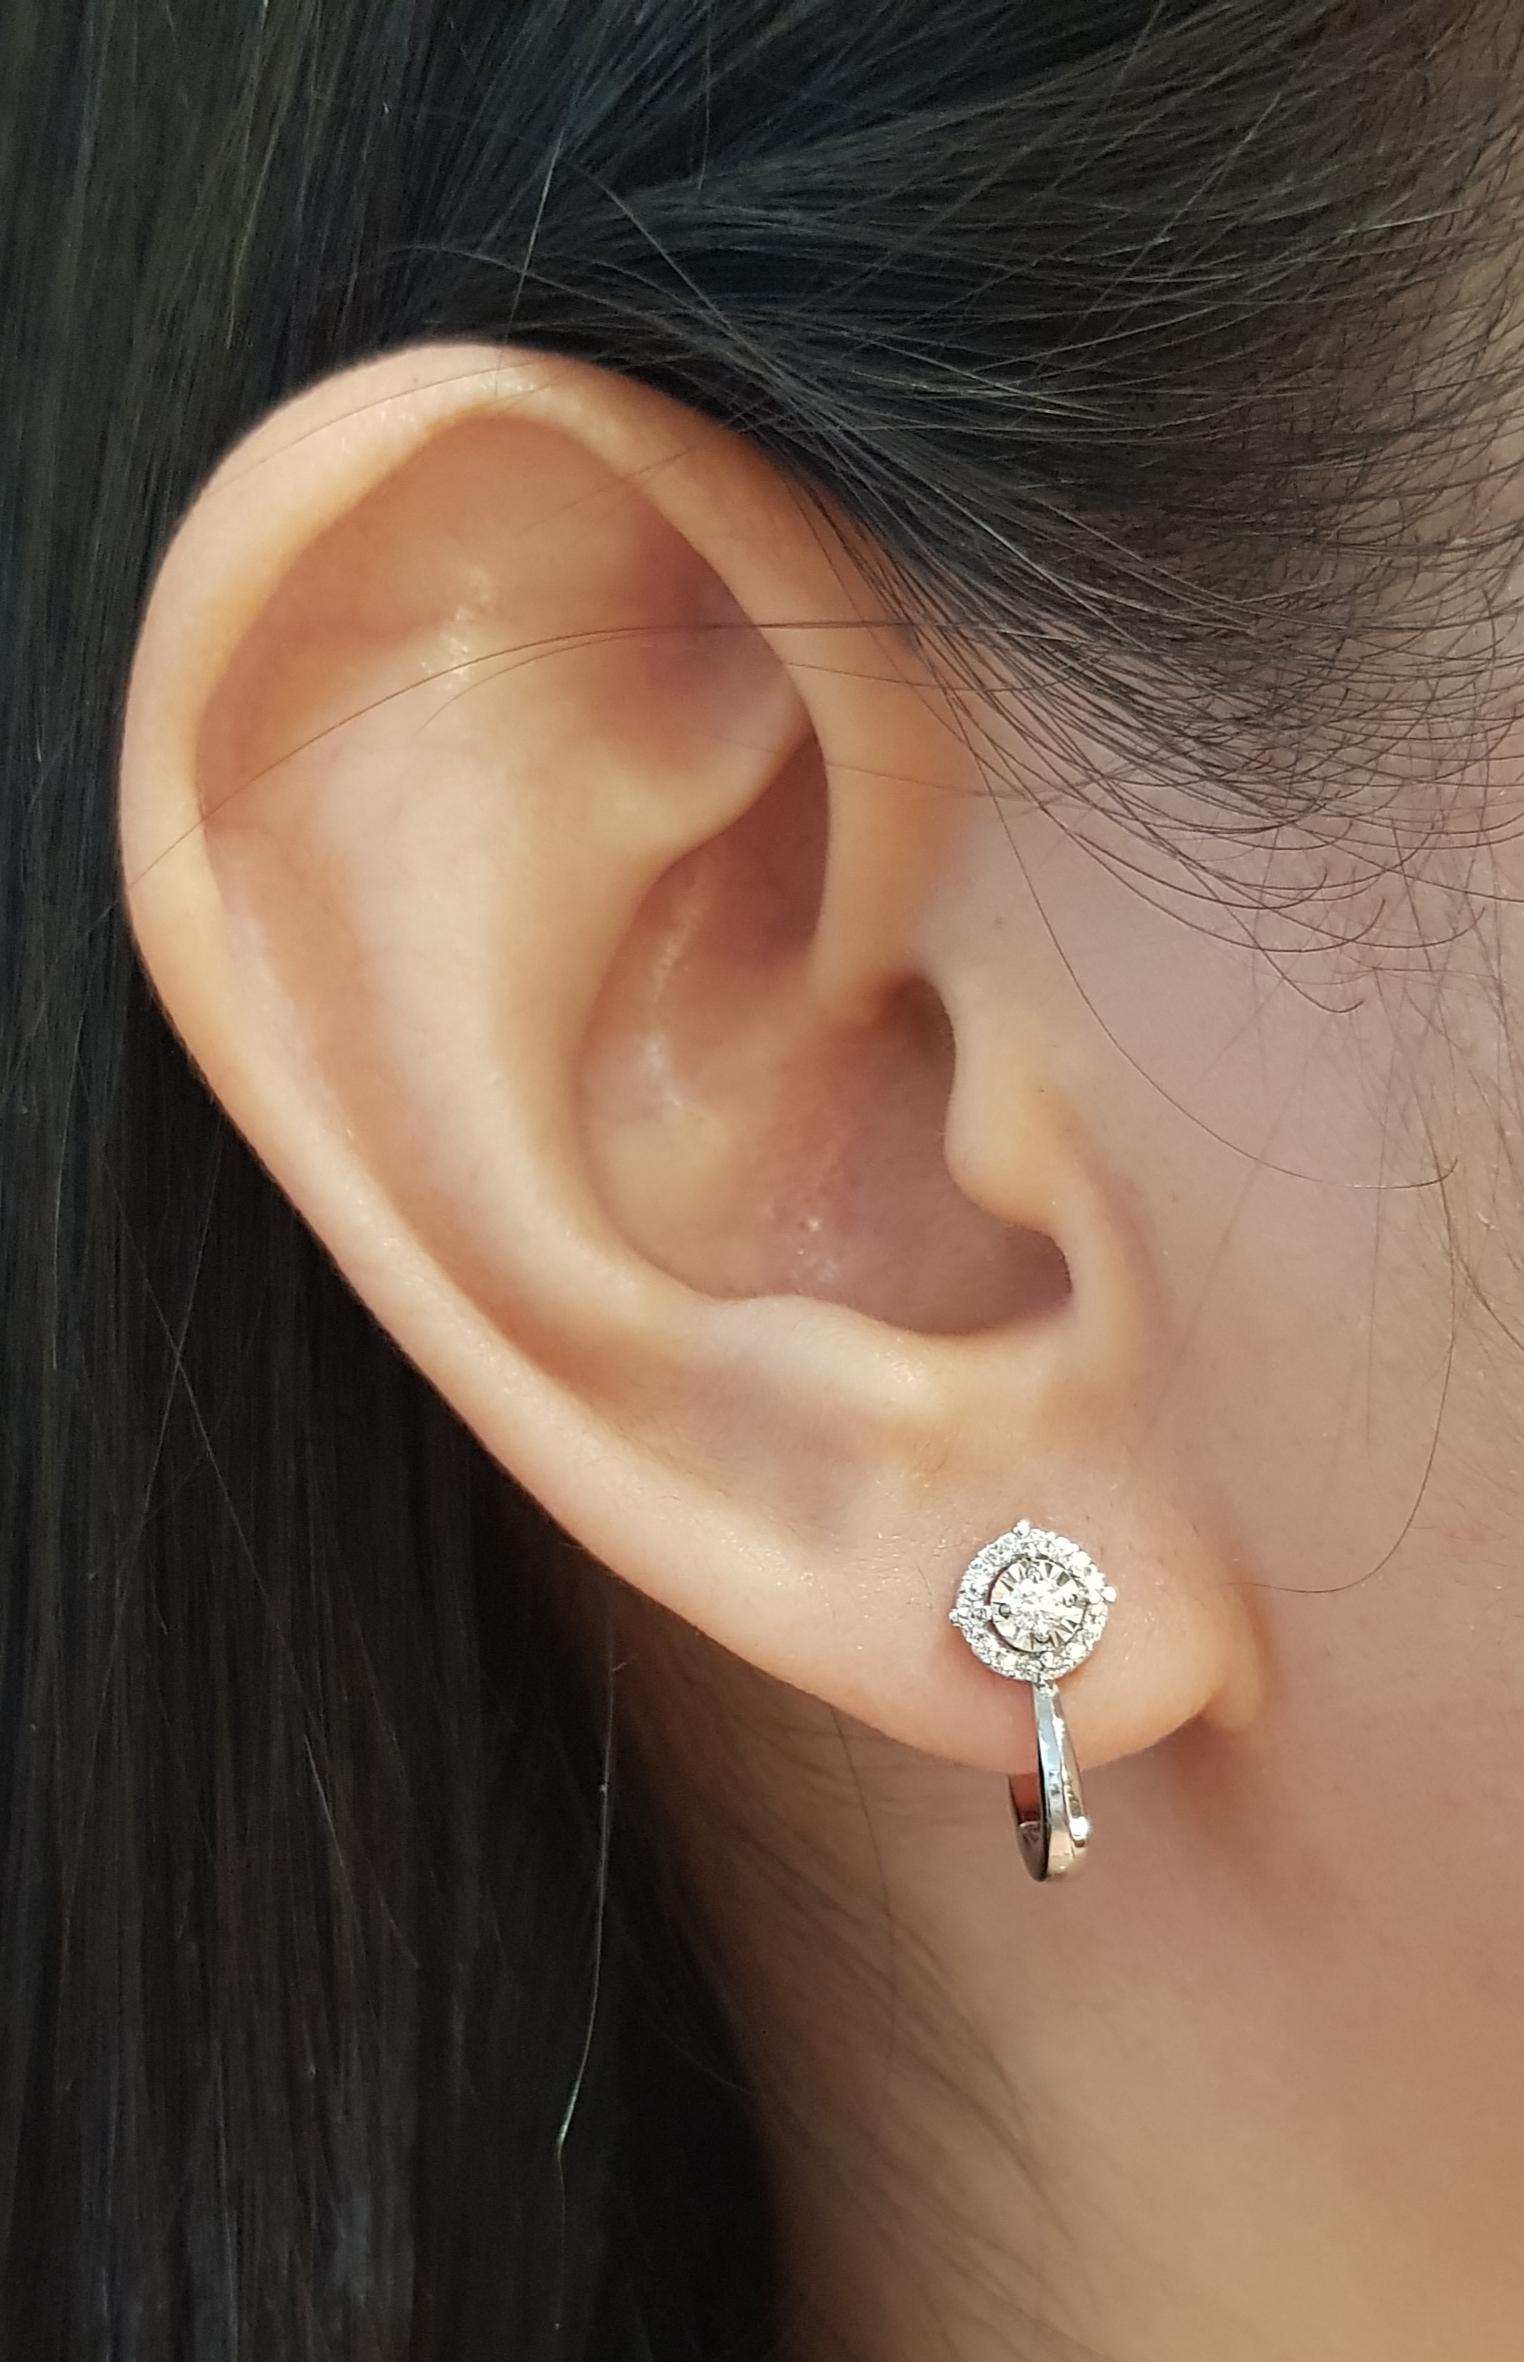 Diamant-Ohrringe mit 0,17 Karat in 18K Weißgold-Fassung

Breite: 0,7 cm 
Länge: 1.5 cm
Gesamtgewicht: 3,47 Gramm

